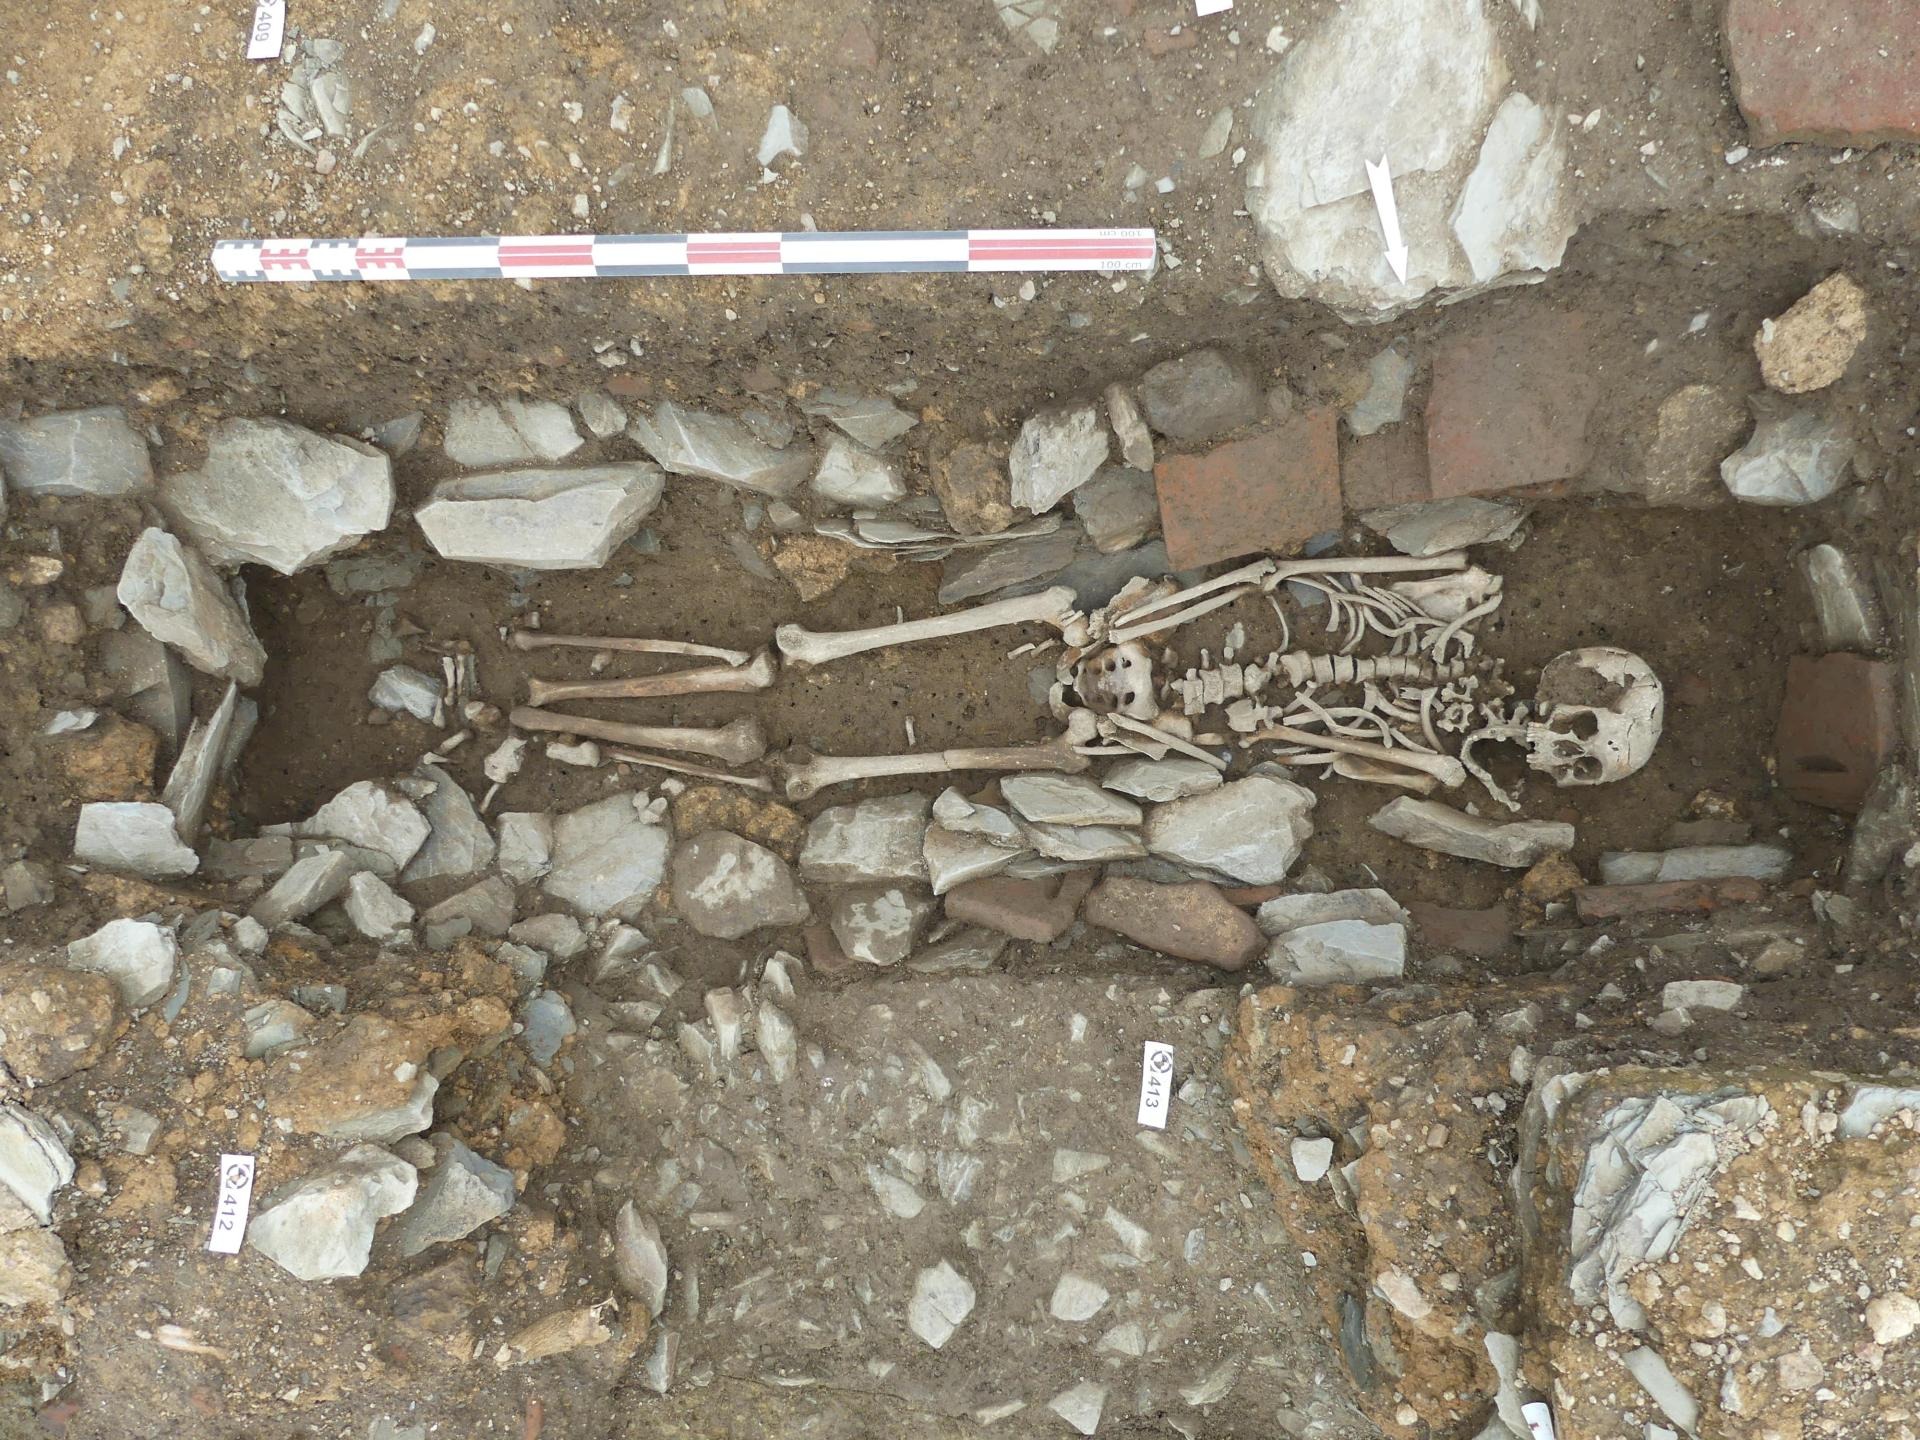 Les fouilles sur le site de l’ancien hôpital de l’Hôtel-Dieu à Rennes révèlent les vestiges d’une nécropole datant des IVe et VIe siècles. © Sandrine Lalain, Inrap